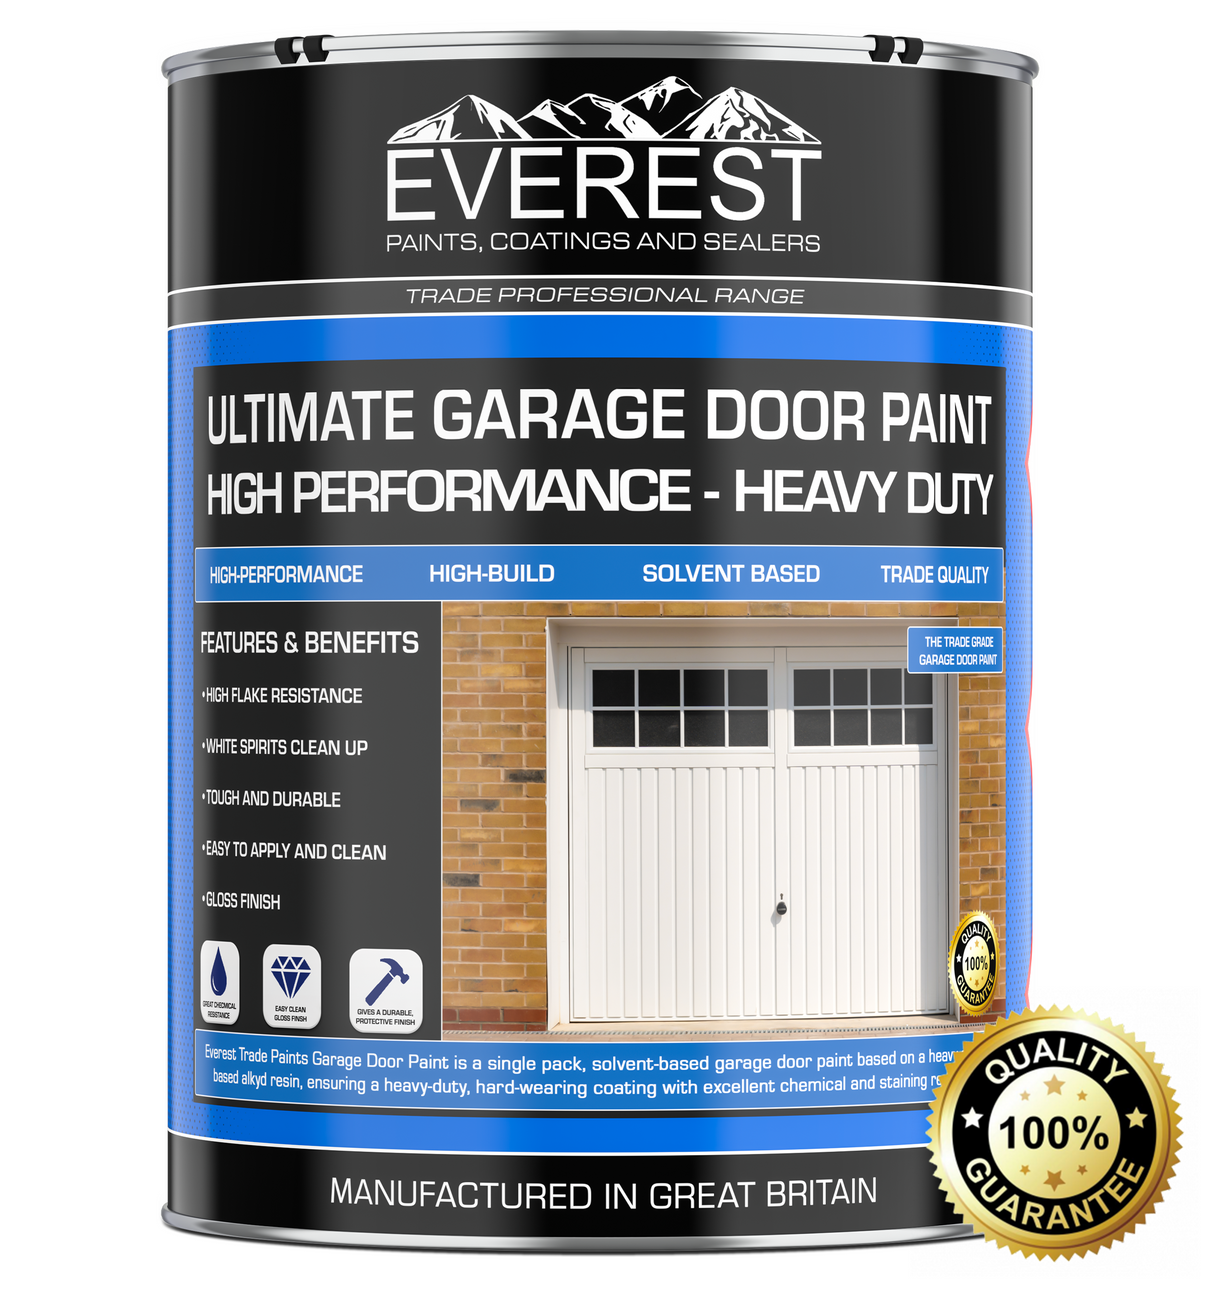 Everest Trade Paints - Garage Door Paint - High Performance Coating